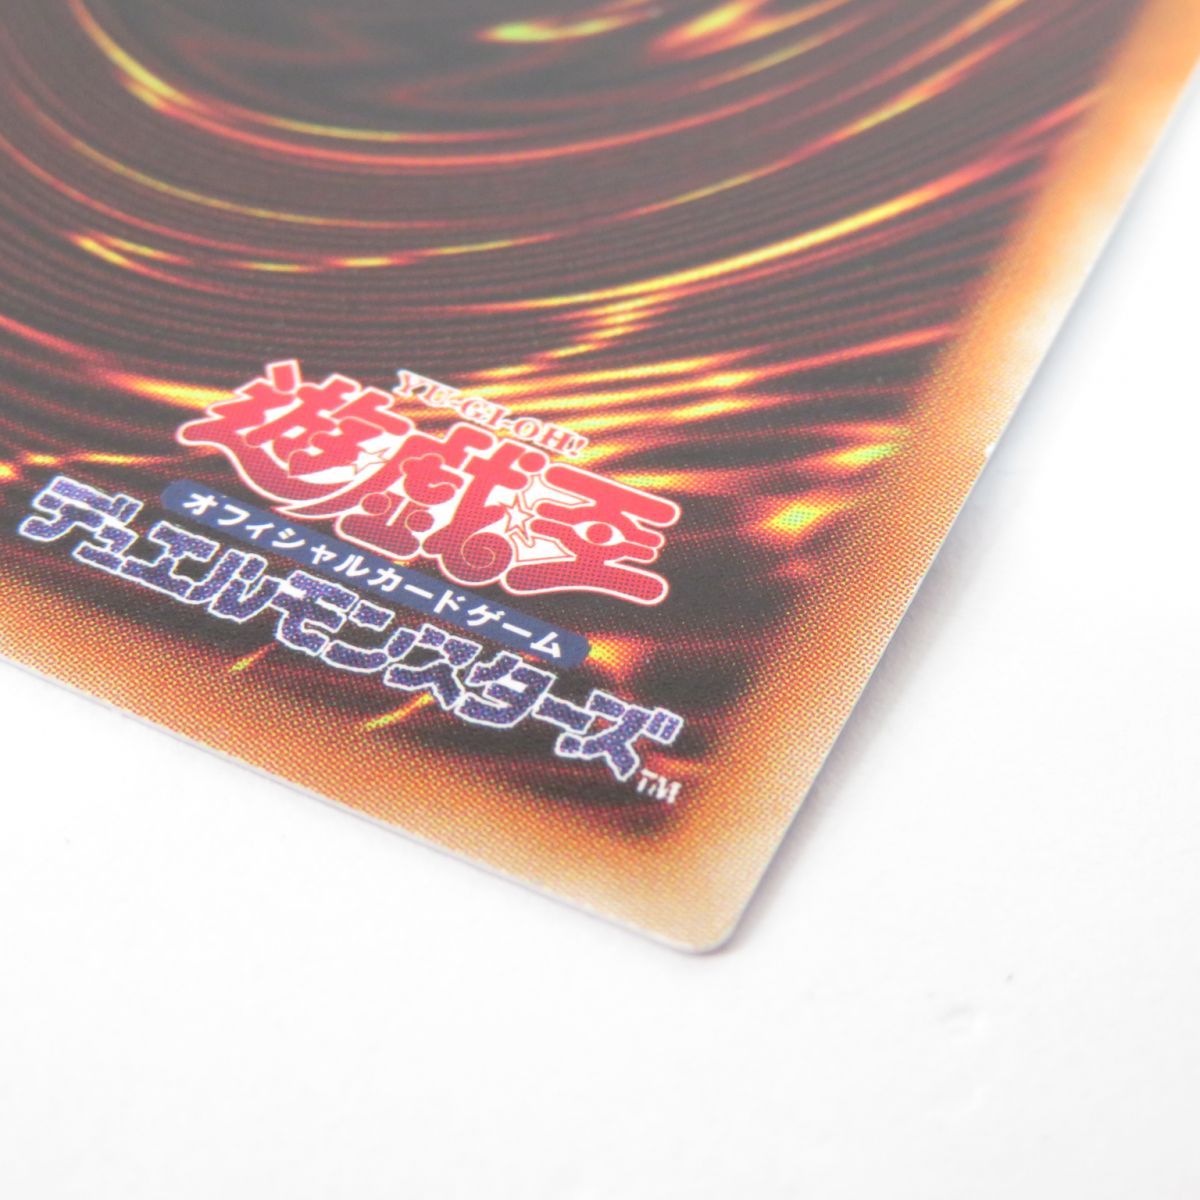 遊戯王 銀河眼の煌星竜 SOFU-JP042 20thシークレット ※中古 - メルカリ